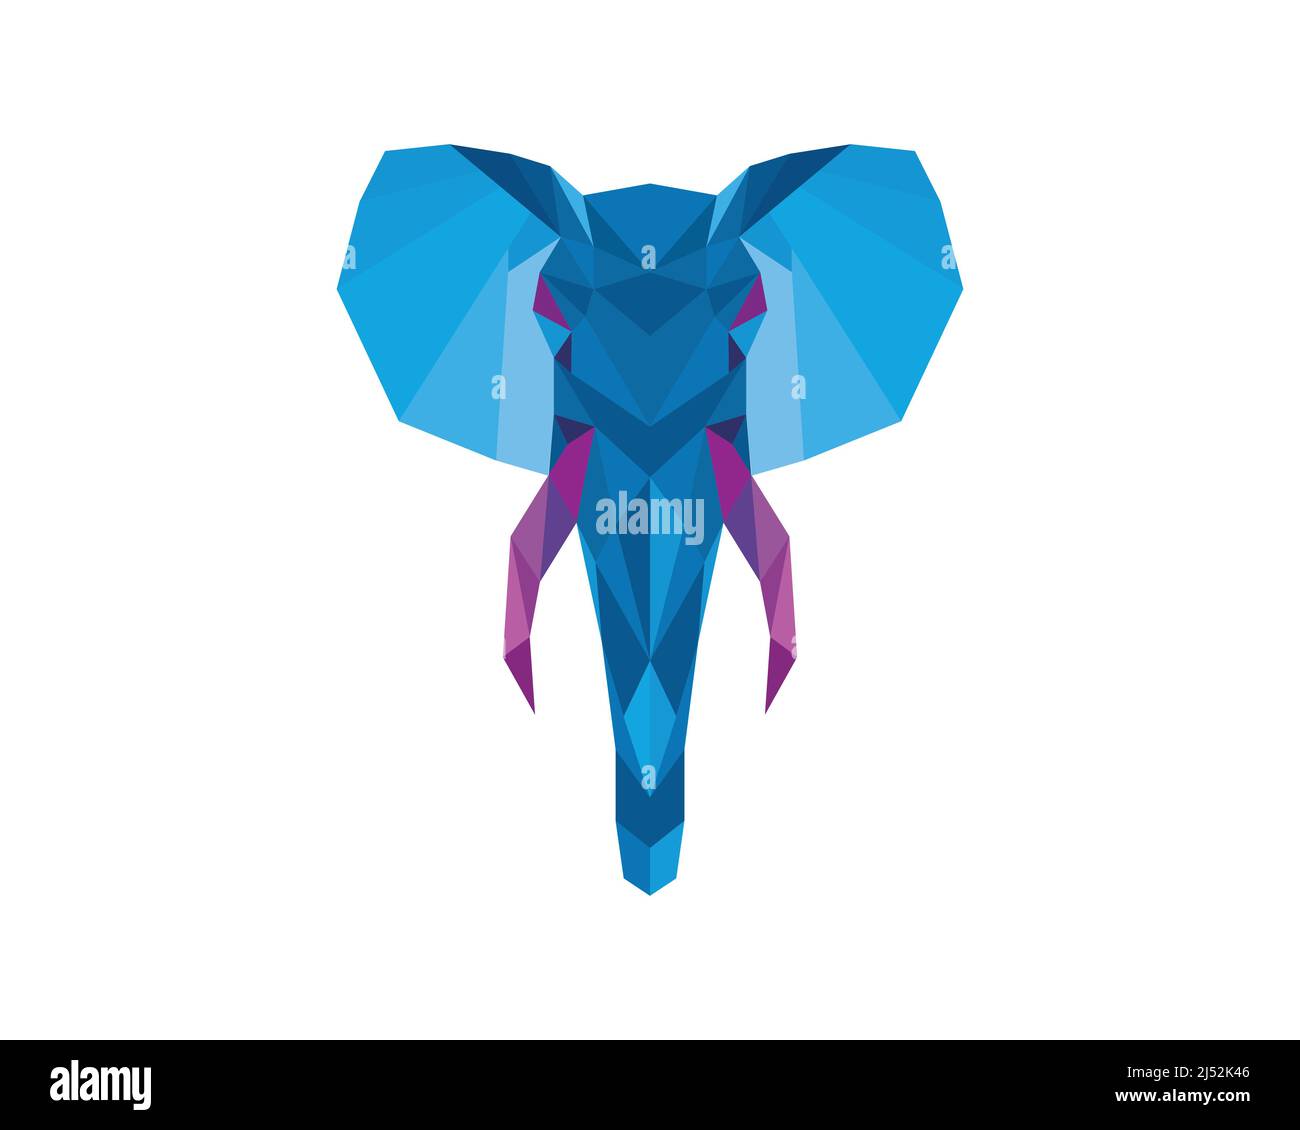 Vecteur d'illustration polygonale Big Elephant Head Illustration de Vecteur